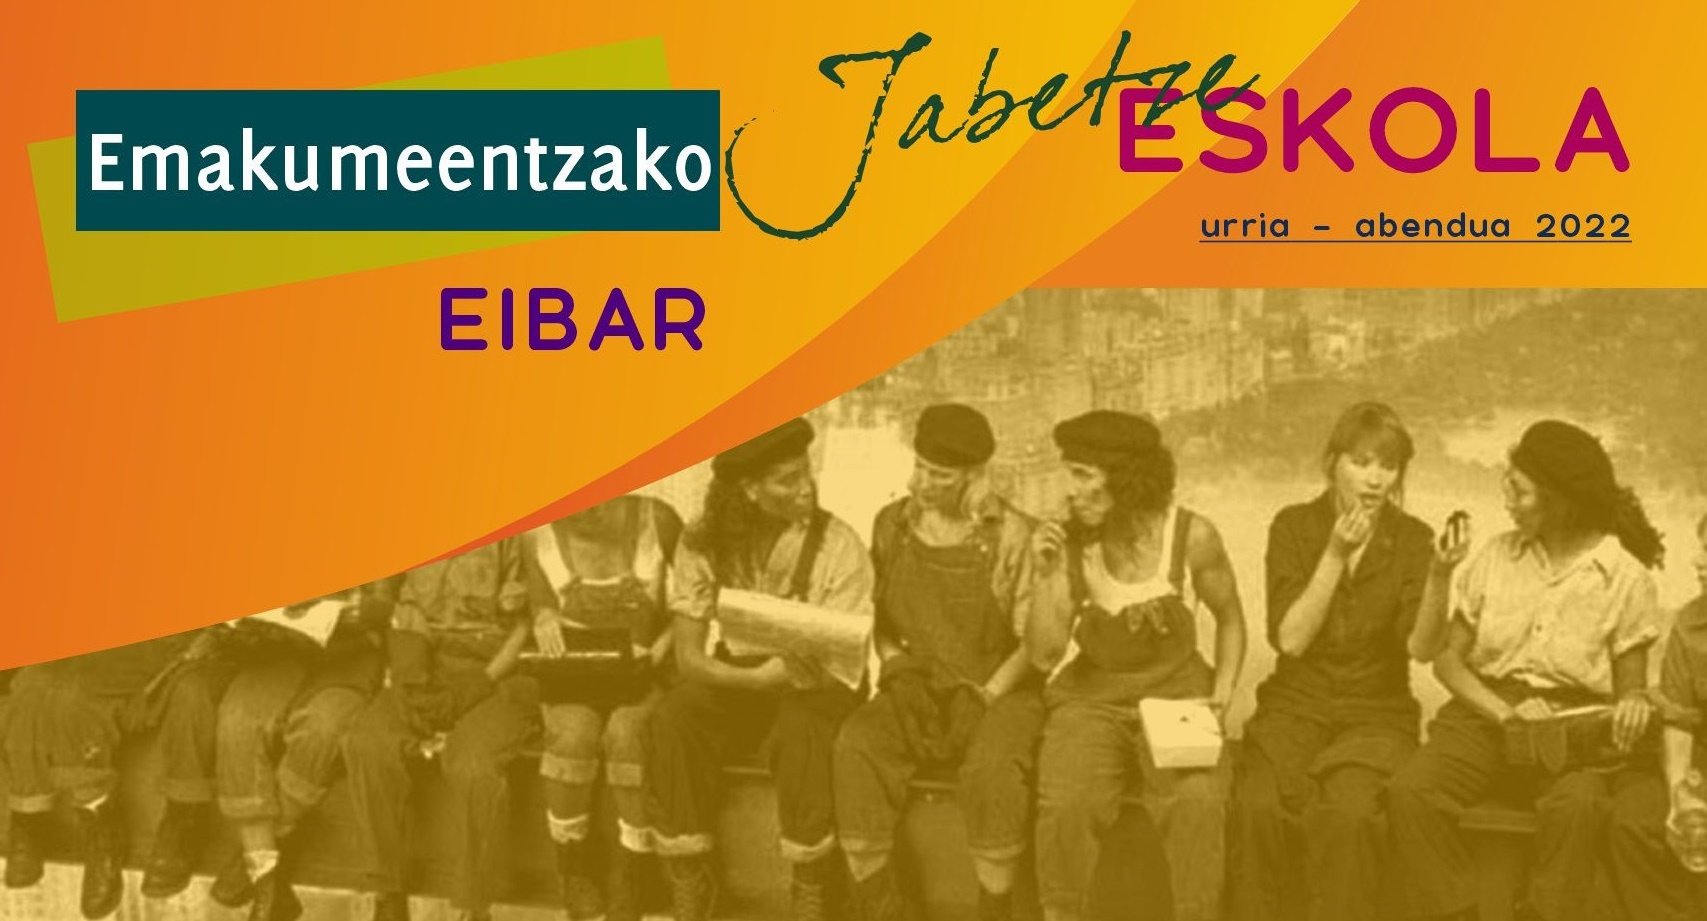 El plazo de prematrícula en los nuevos cursos de otoño de la Jabetze Eskola se abrirá en septiembre